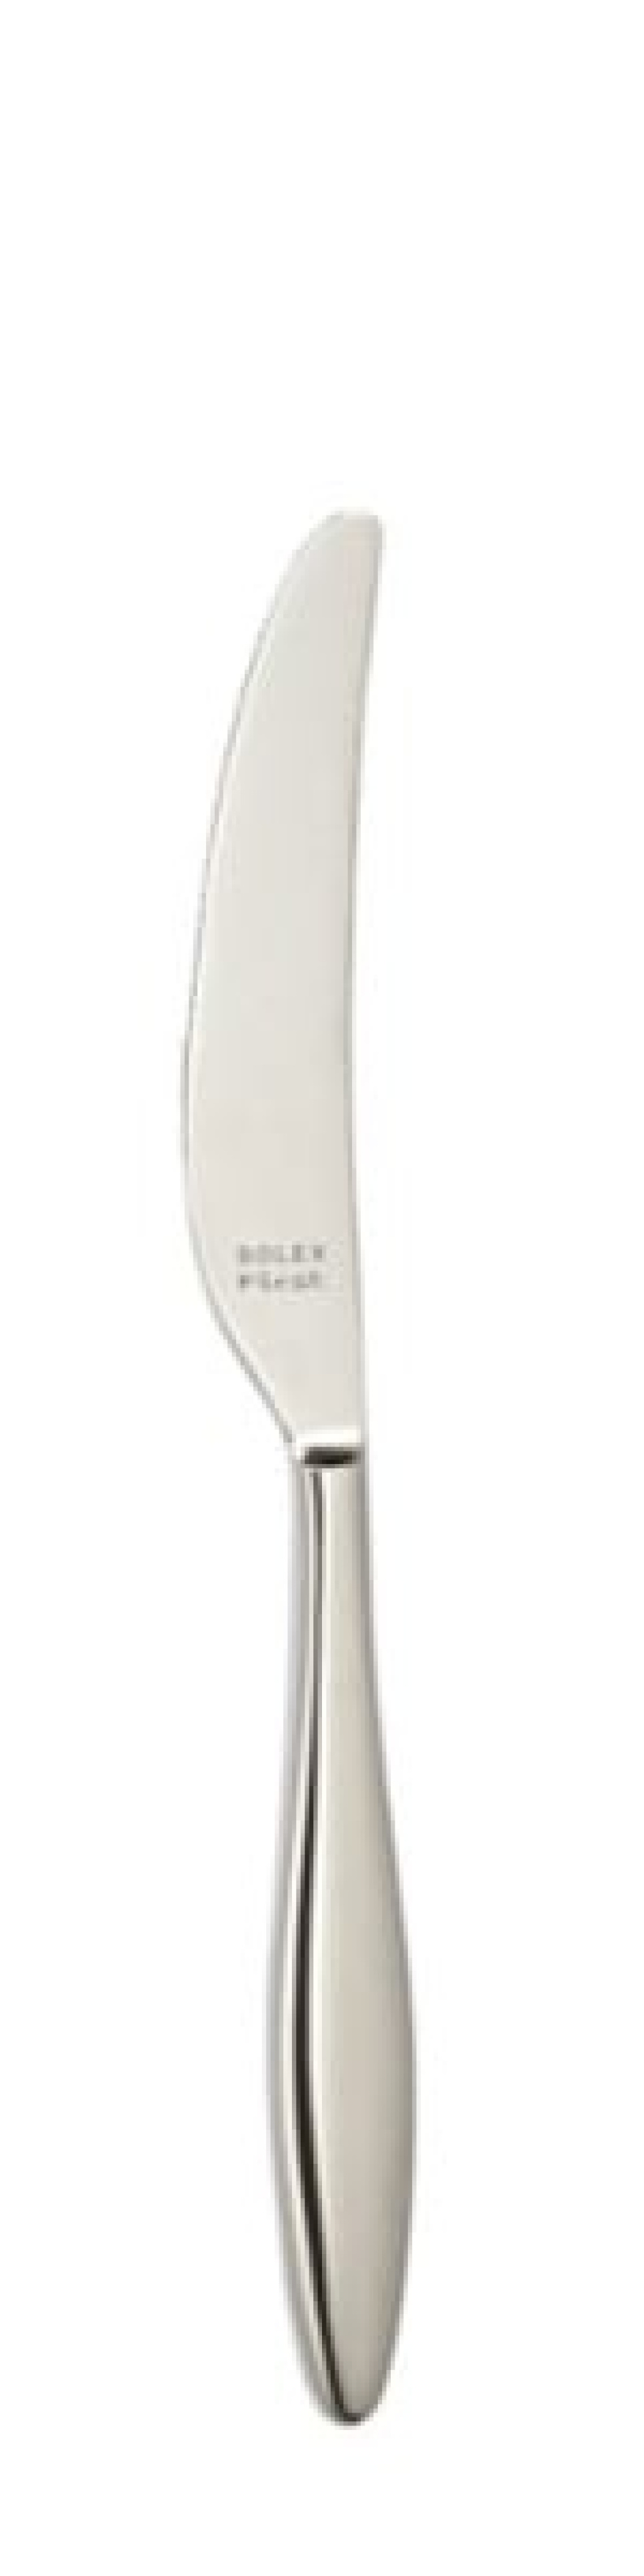 Terra Bordskniv 240 mm - Solex i gruppen Dukning / Bestick / Knivar hos The Kitchen Lab (1284-21643)